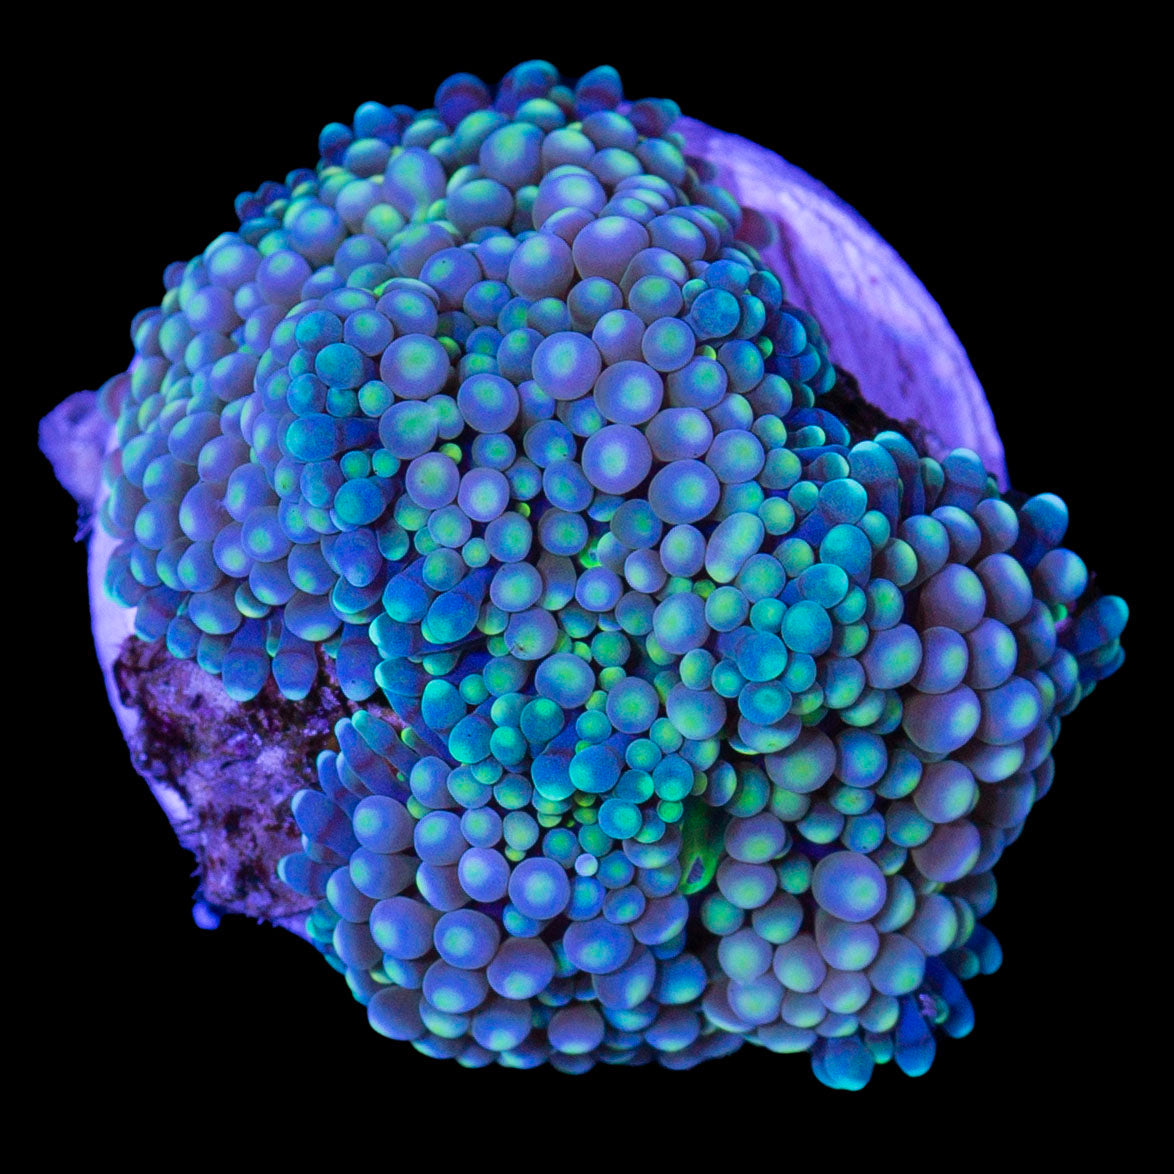 Blue Ricordea Mushroom Coral